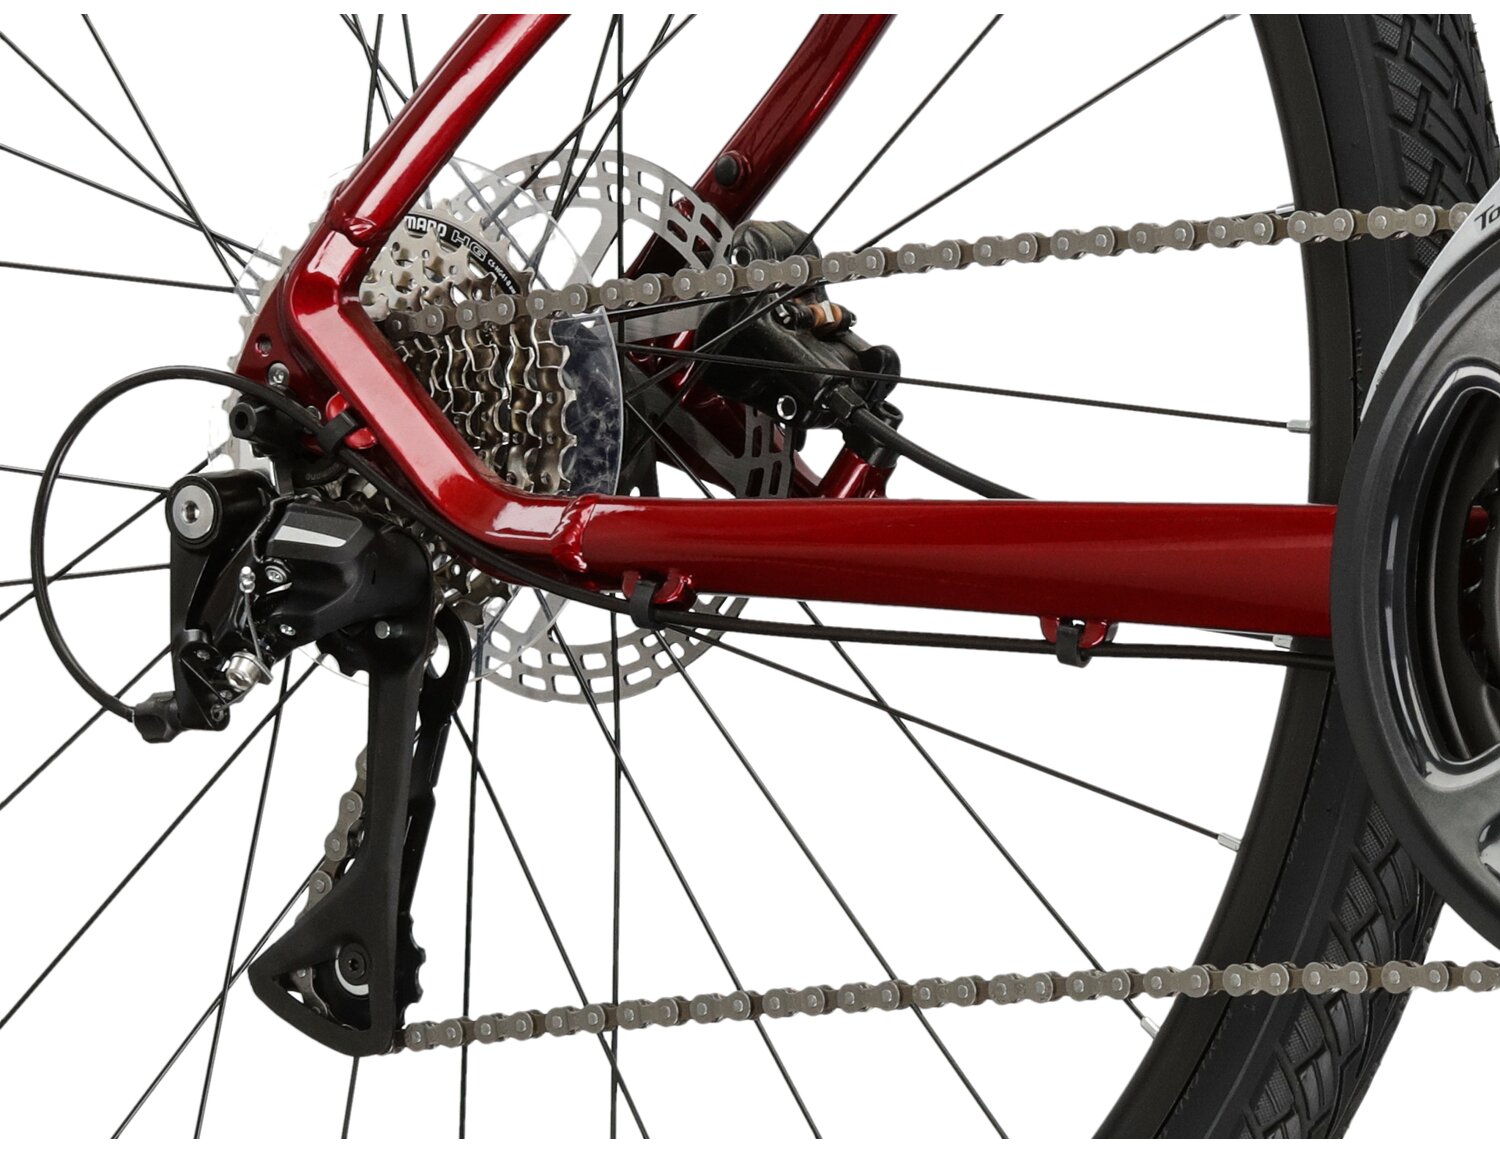  Tylna ośmiobiegowa przerzutka Shimano Acera M3020 oraz hydrauliczne hamulce tarczowe Radius w rowerze crossowym damskim KROSS Evado 4.0 